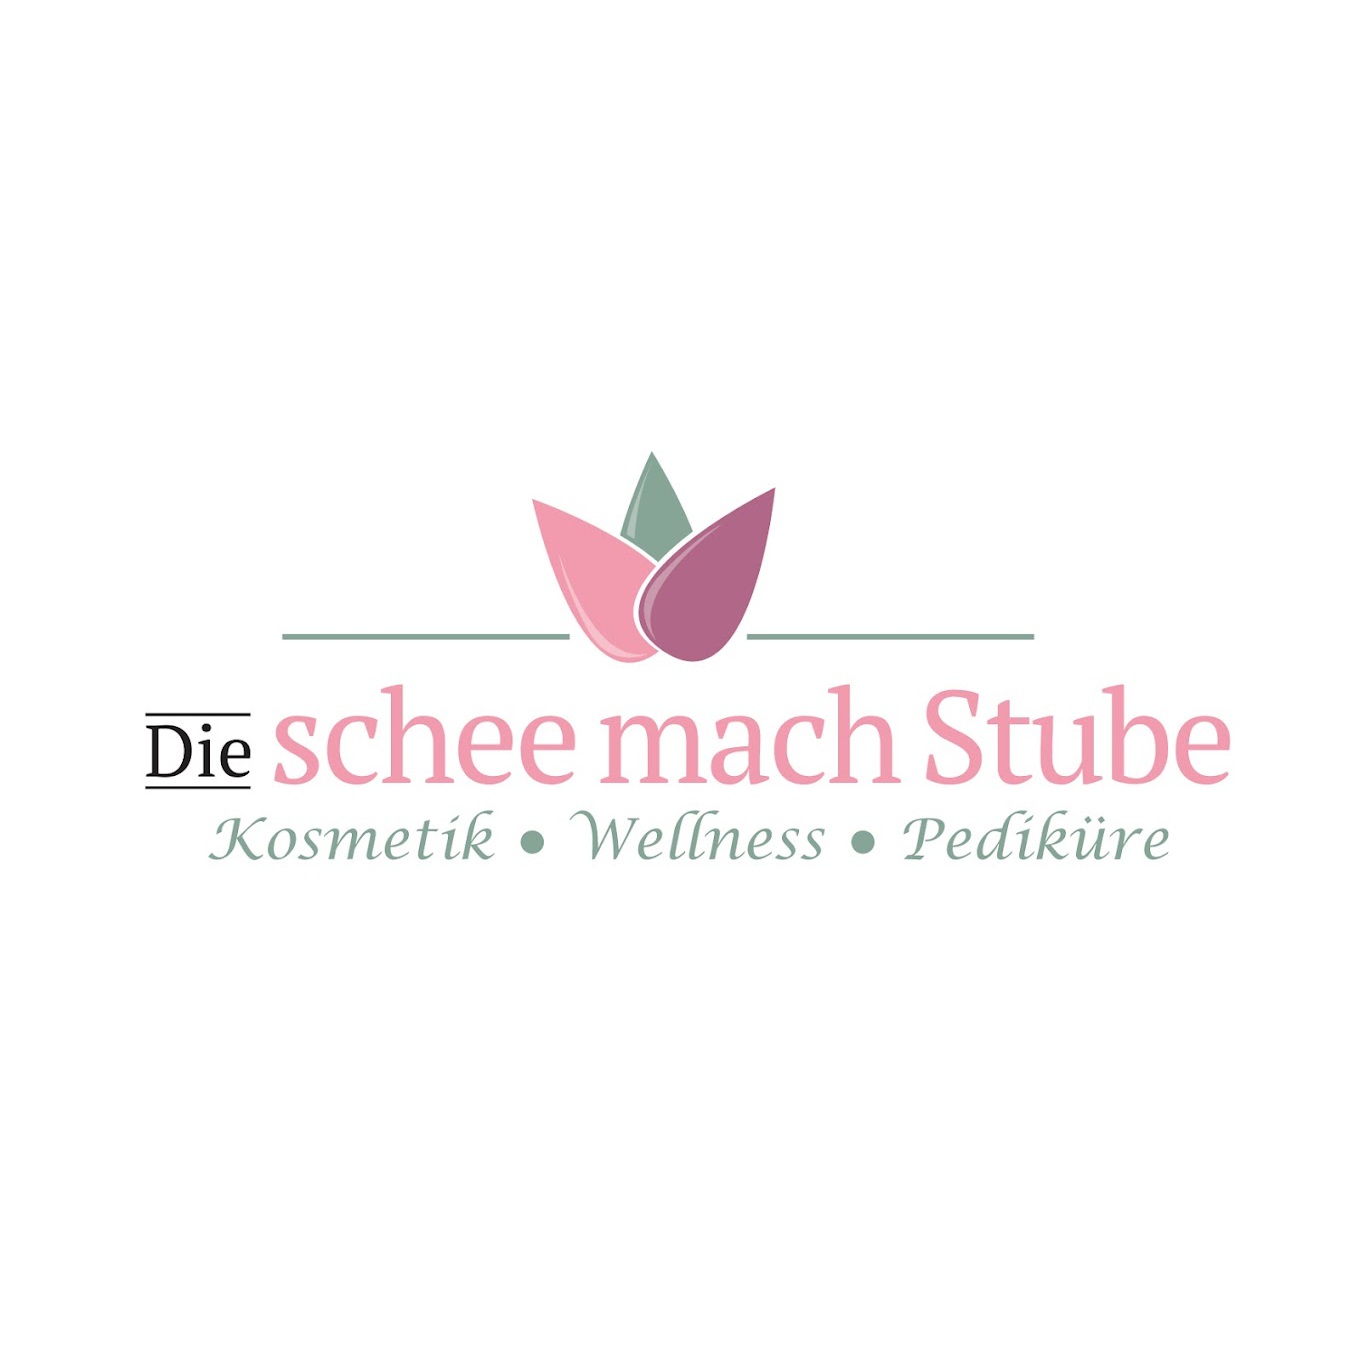 Die schee mach Stube in Ebermannstadt - Logo